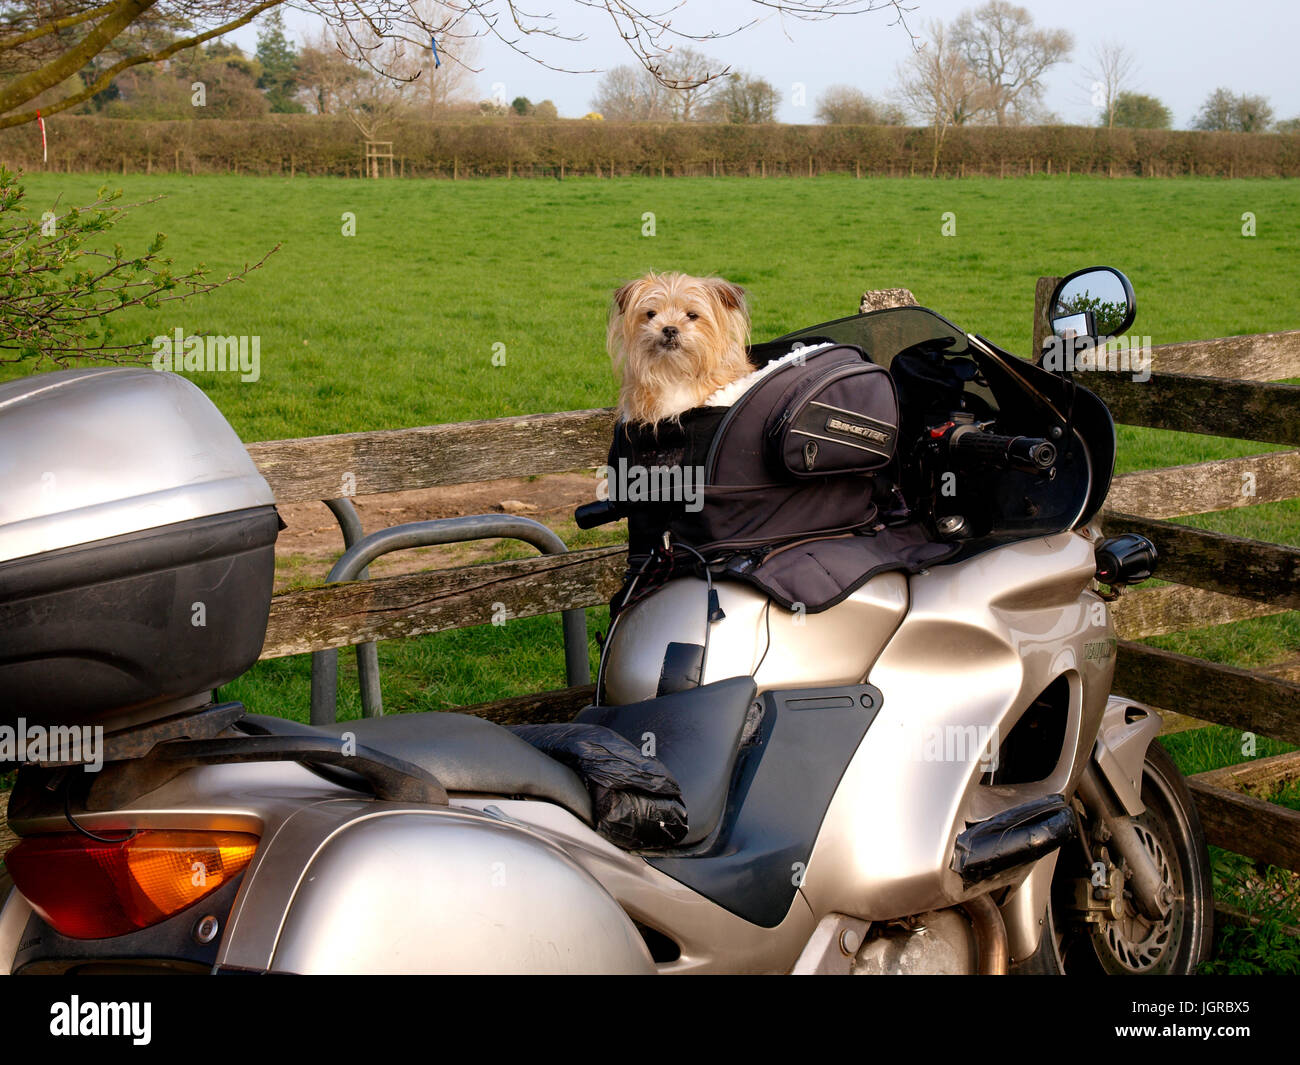 Süße kleine Hund in einem Träger auf einem Motorrad, Somerset,  Großbritannien Stockfotografie - Alamy